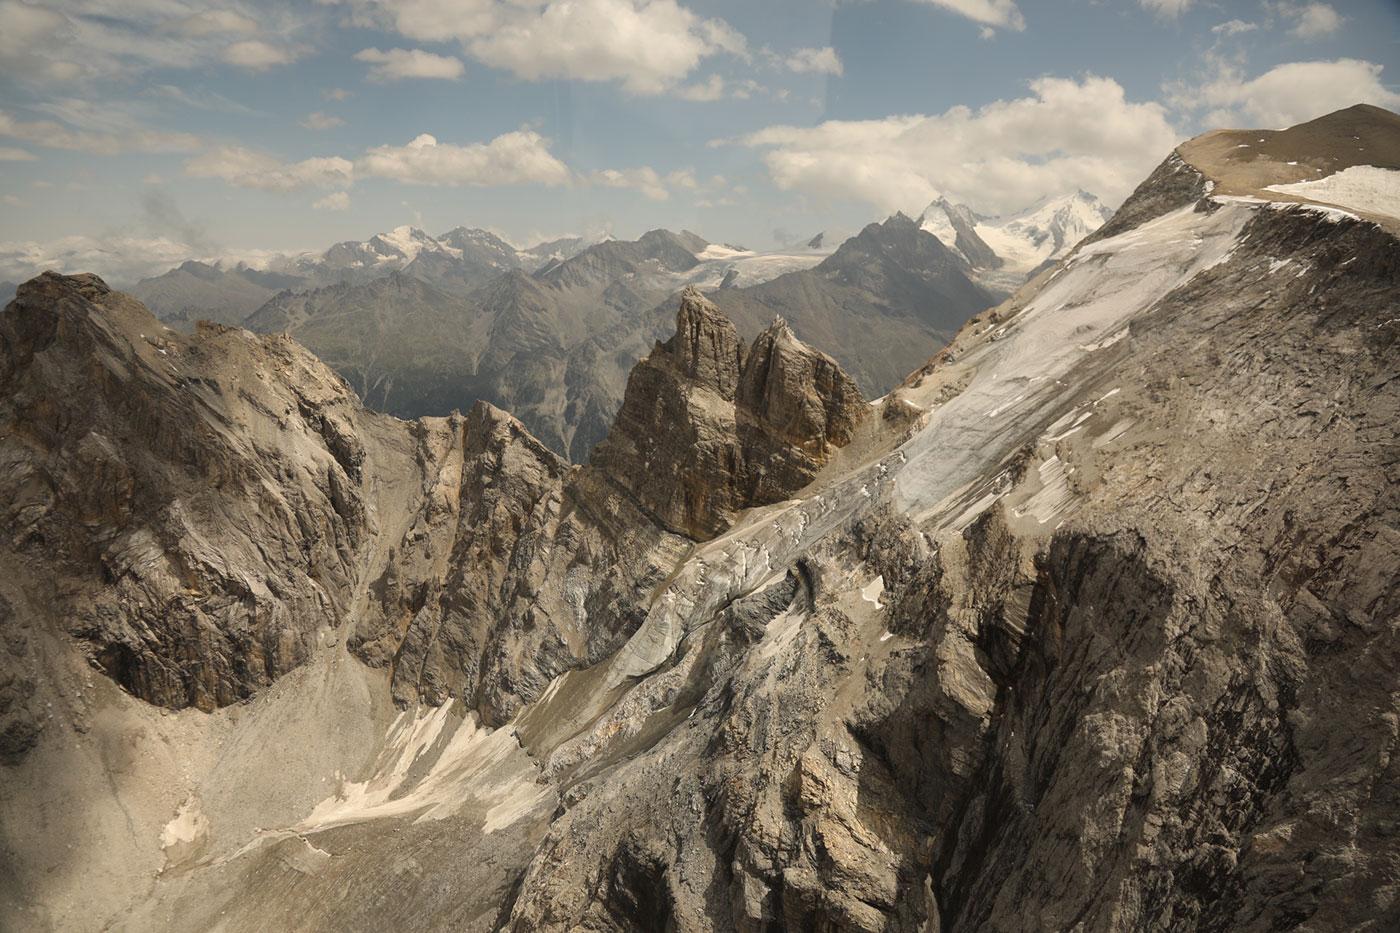 Alpine landscape around Zermatt, Switzerland. Photo: BBC/Russell Leven